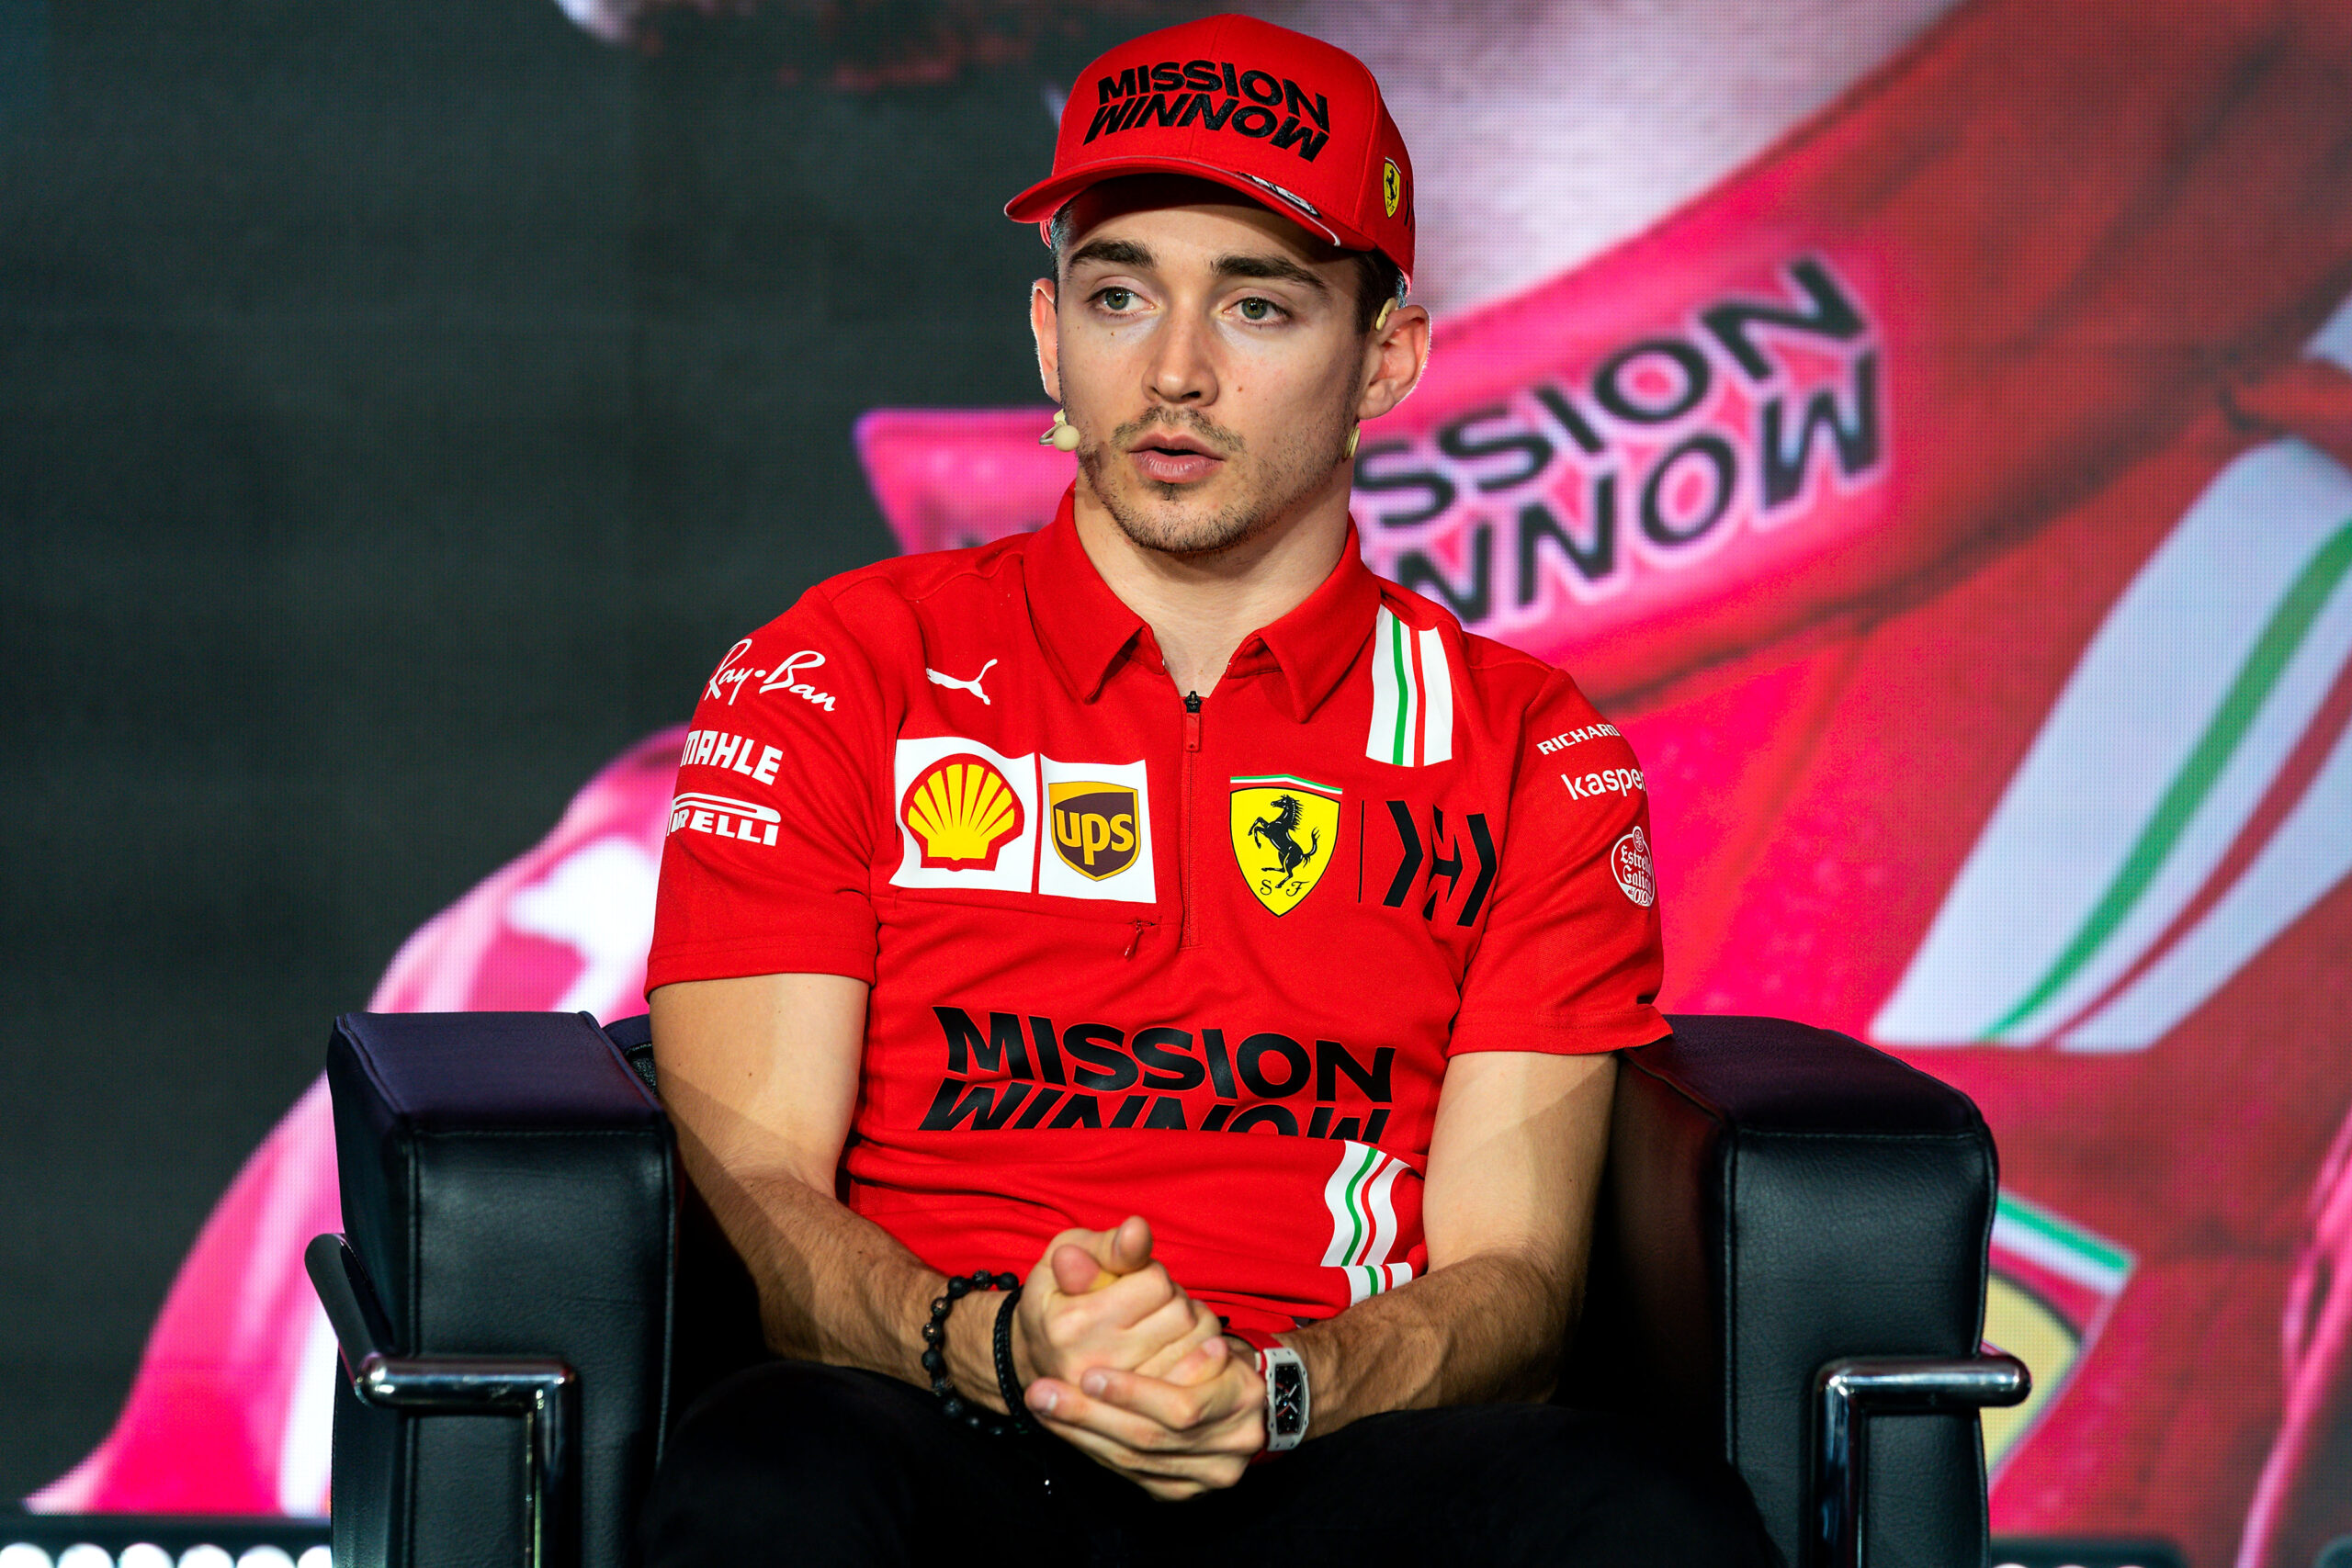 F1 - Les pilotes Ferrari optimistes mais prudents avant le début de la saison